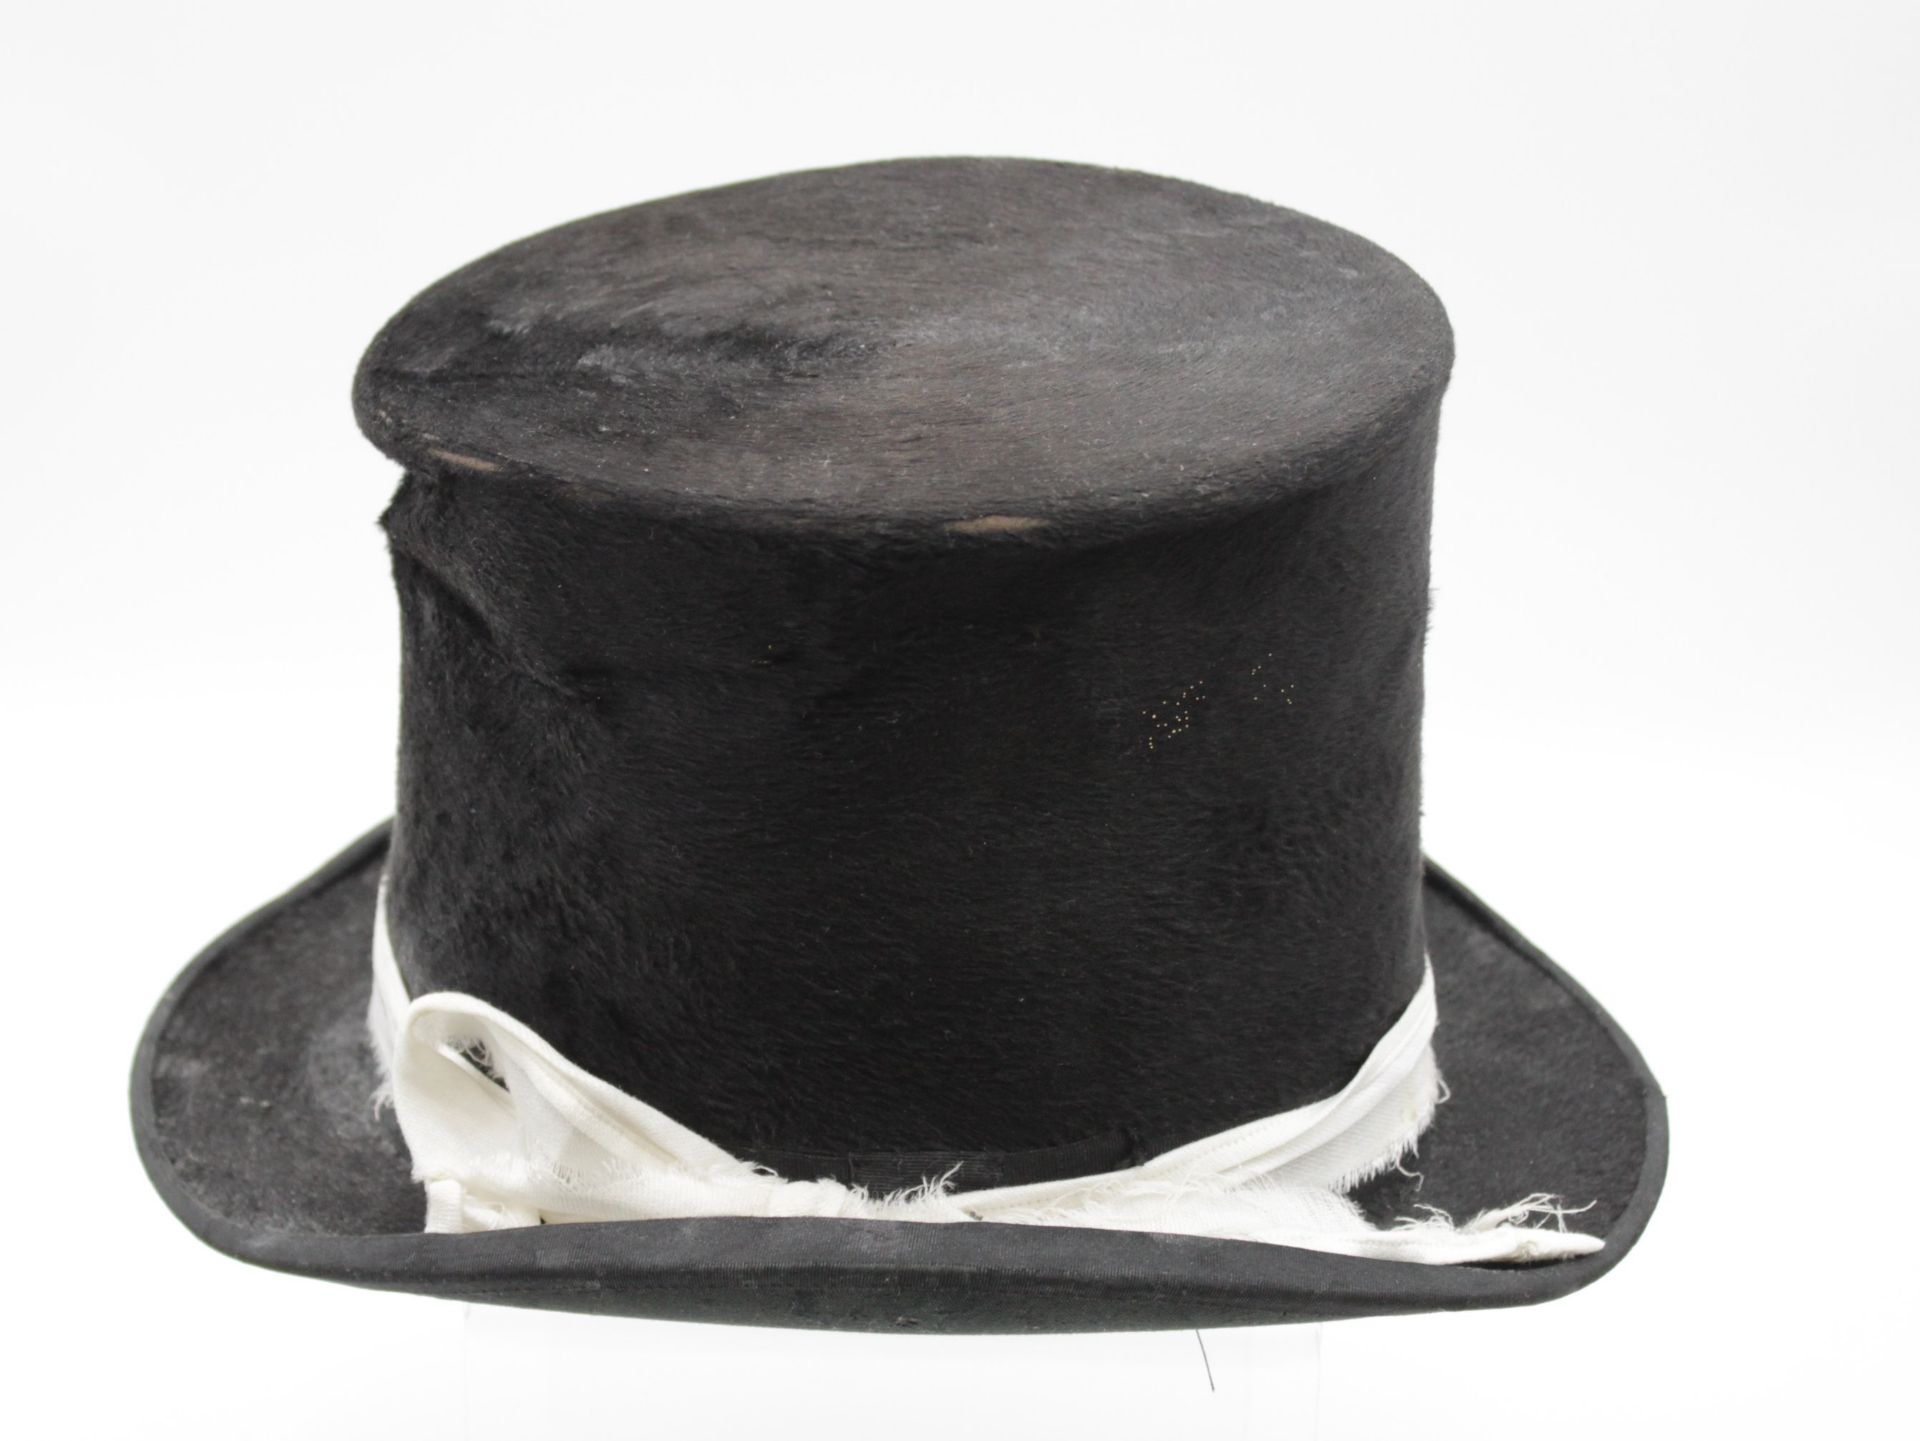 alter Chapeau-Claque, strake Gebrauchsdspuren - Bild 2 aus 5